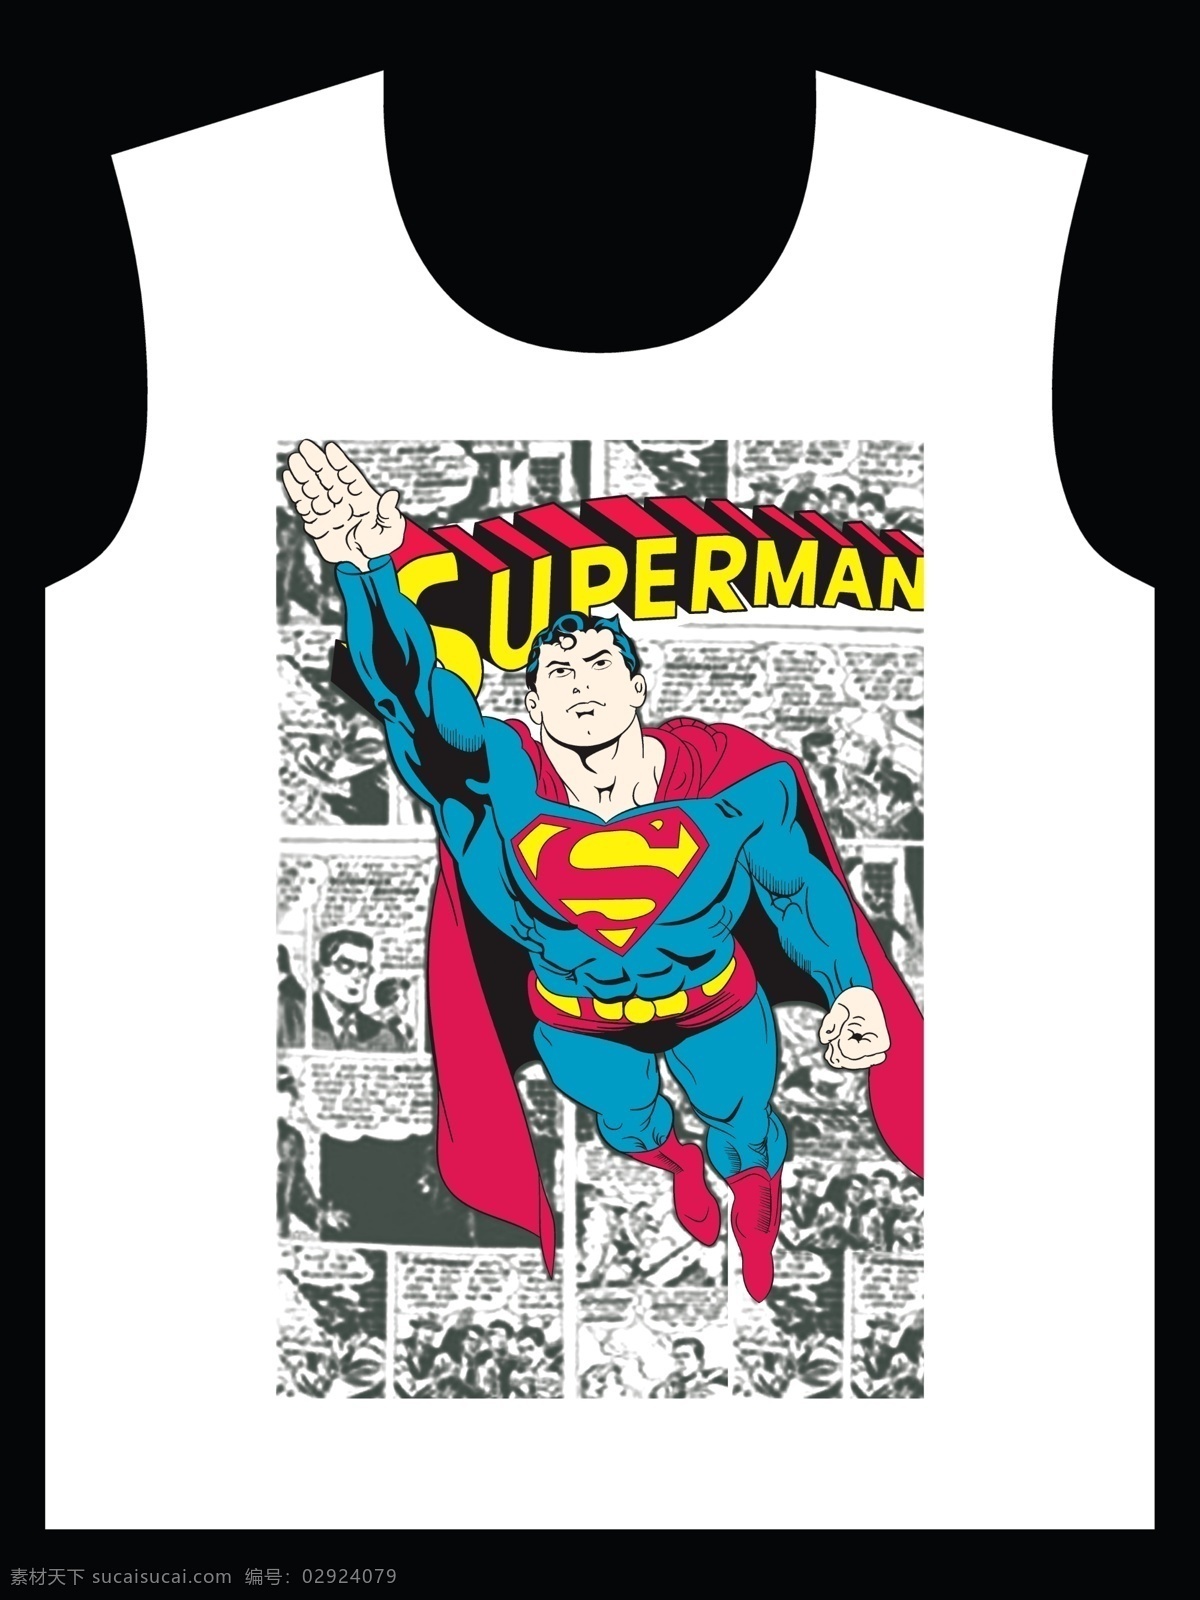 超人 漫画 风格 t 恤 服装 印花 图案 设 漫画风格 t恤服装 印花图案 动漫动画 动漫人物